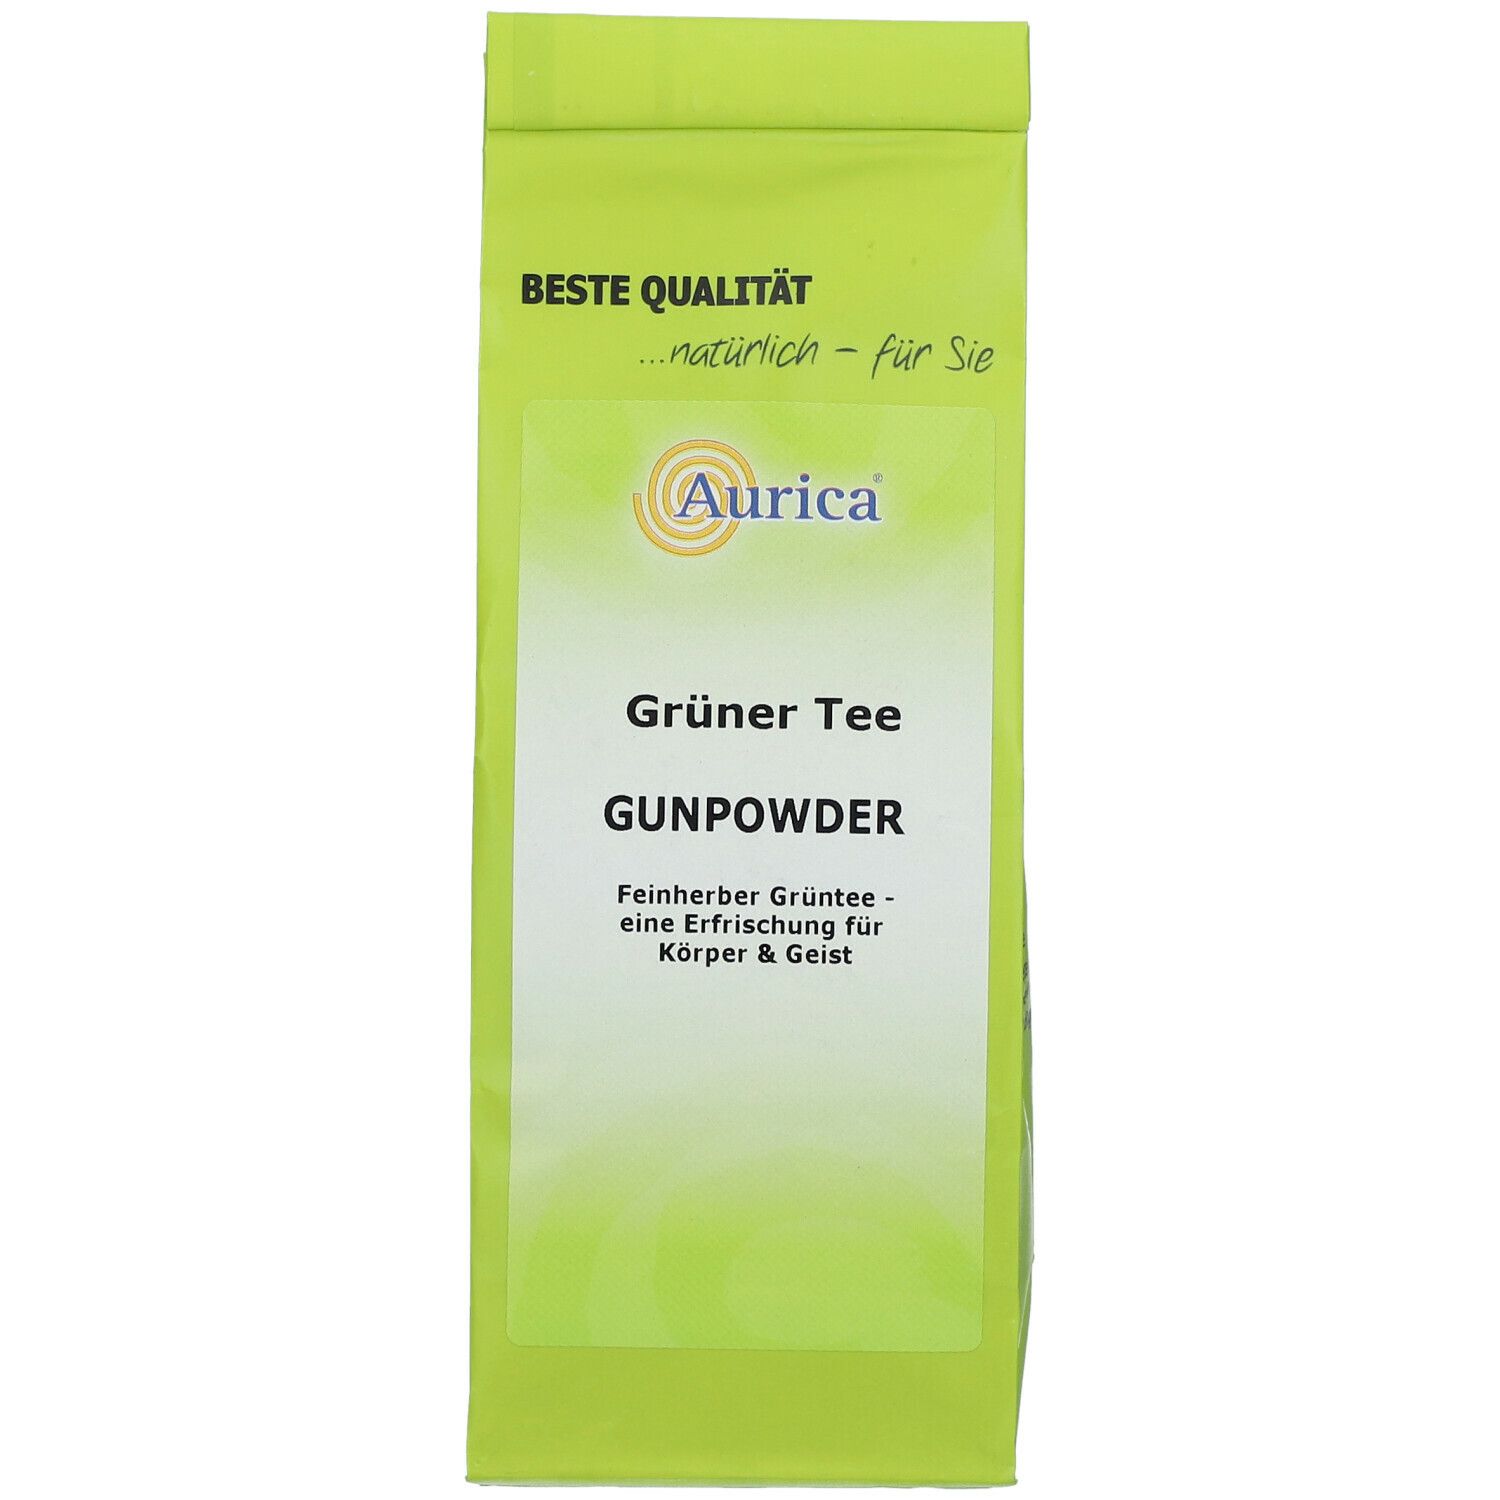 Aurica® Grüner Tee Gunpowder